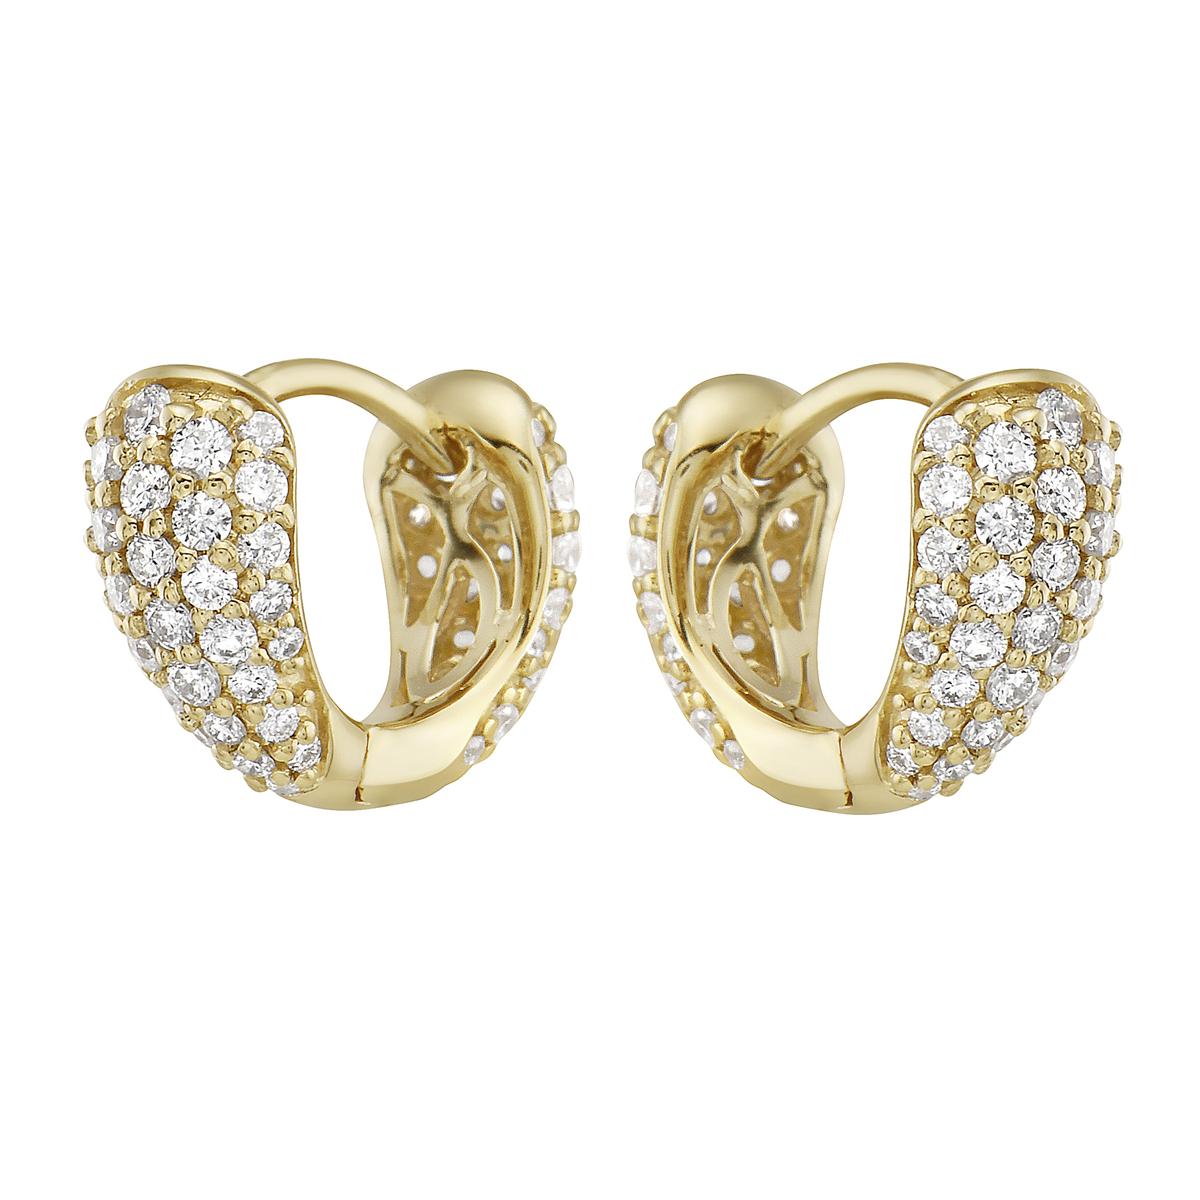 Mit diesen exquisiten gelbgoldenen Diamant-Hugies stehen Stil und Glamour im Rampenlicht. Diese Umarmungen sind in 14-karätigem Gold gefasst und bestehen aus 1,9 Gramm Gold. Die Farbe der Diamanten ist GH. Die Klarheit ist SI1-OSI2. Diese Ohrringe